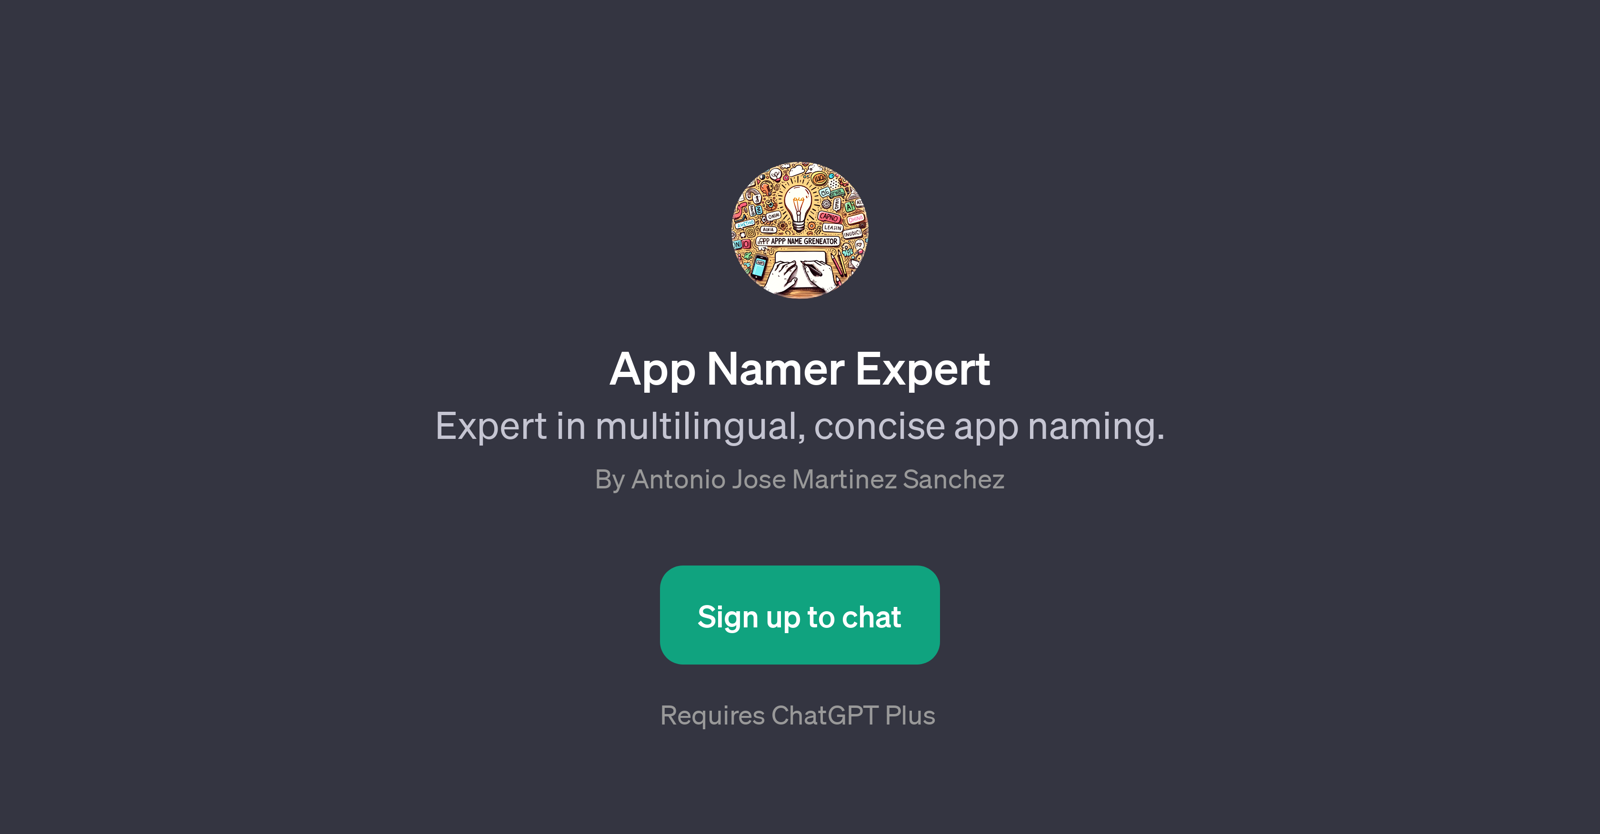 App Namer Expert website